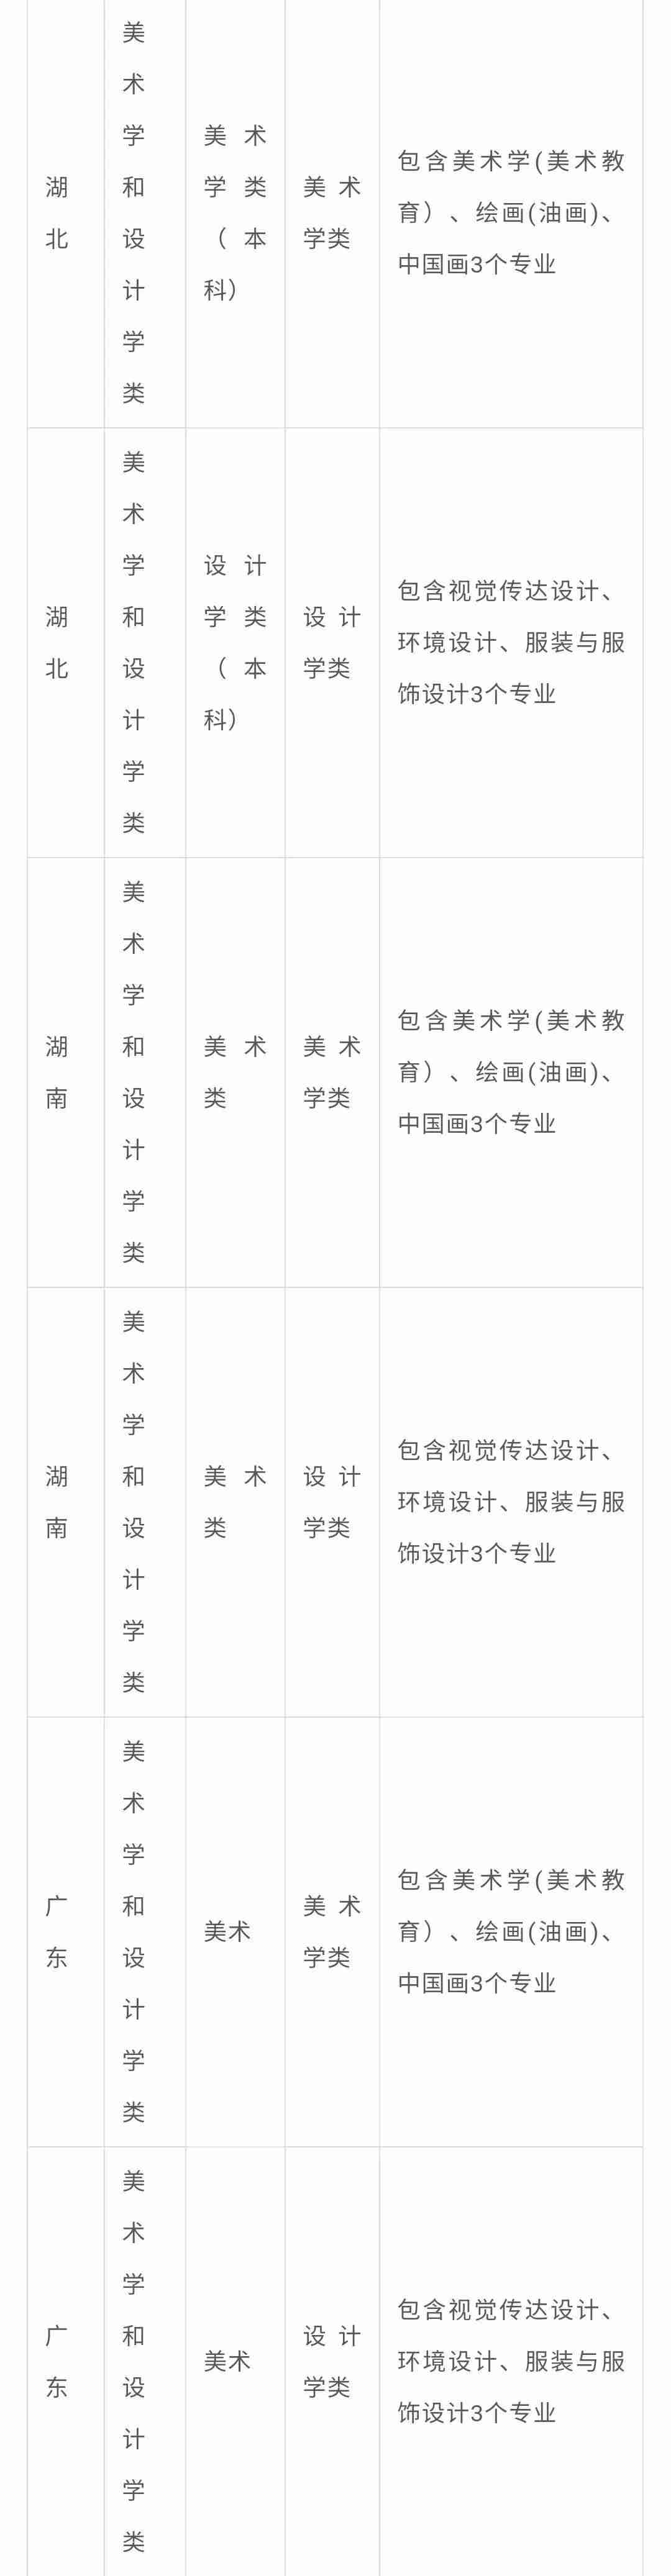 北京画室整理|中央民族大学2021年艺术类专业与各省统考科类对应表,08